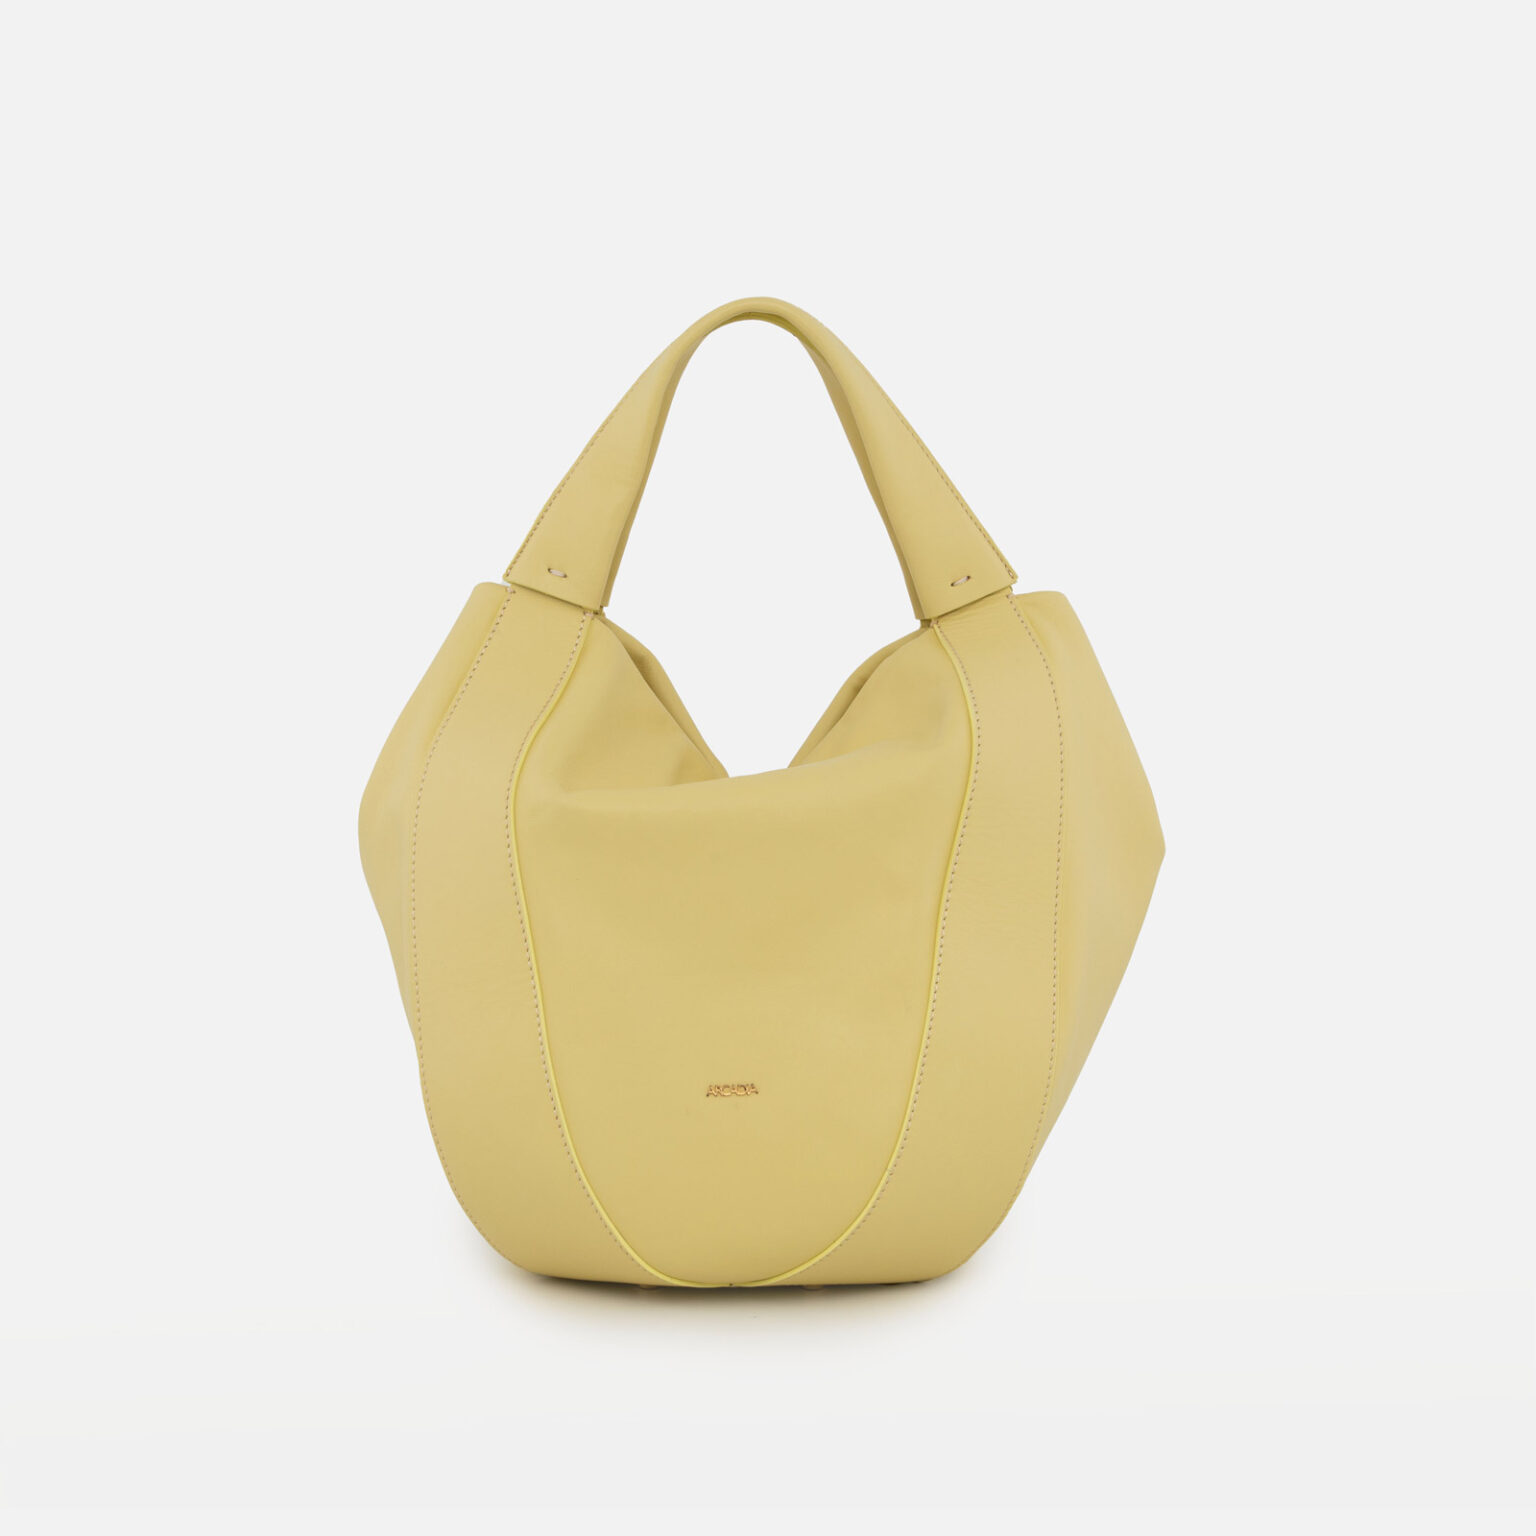 Teresa Large Top Handles | Arcadia Handbags